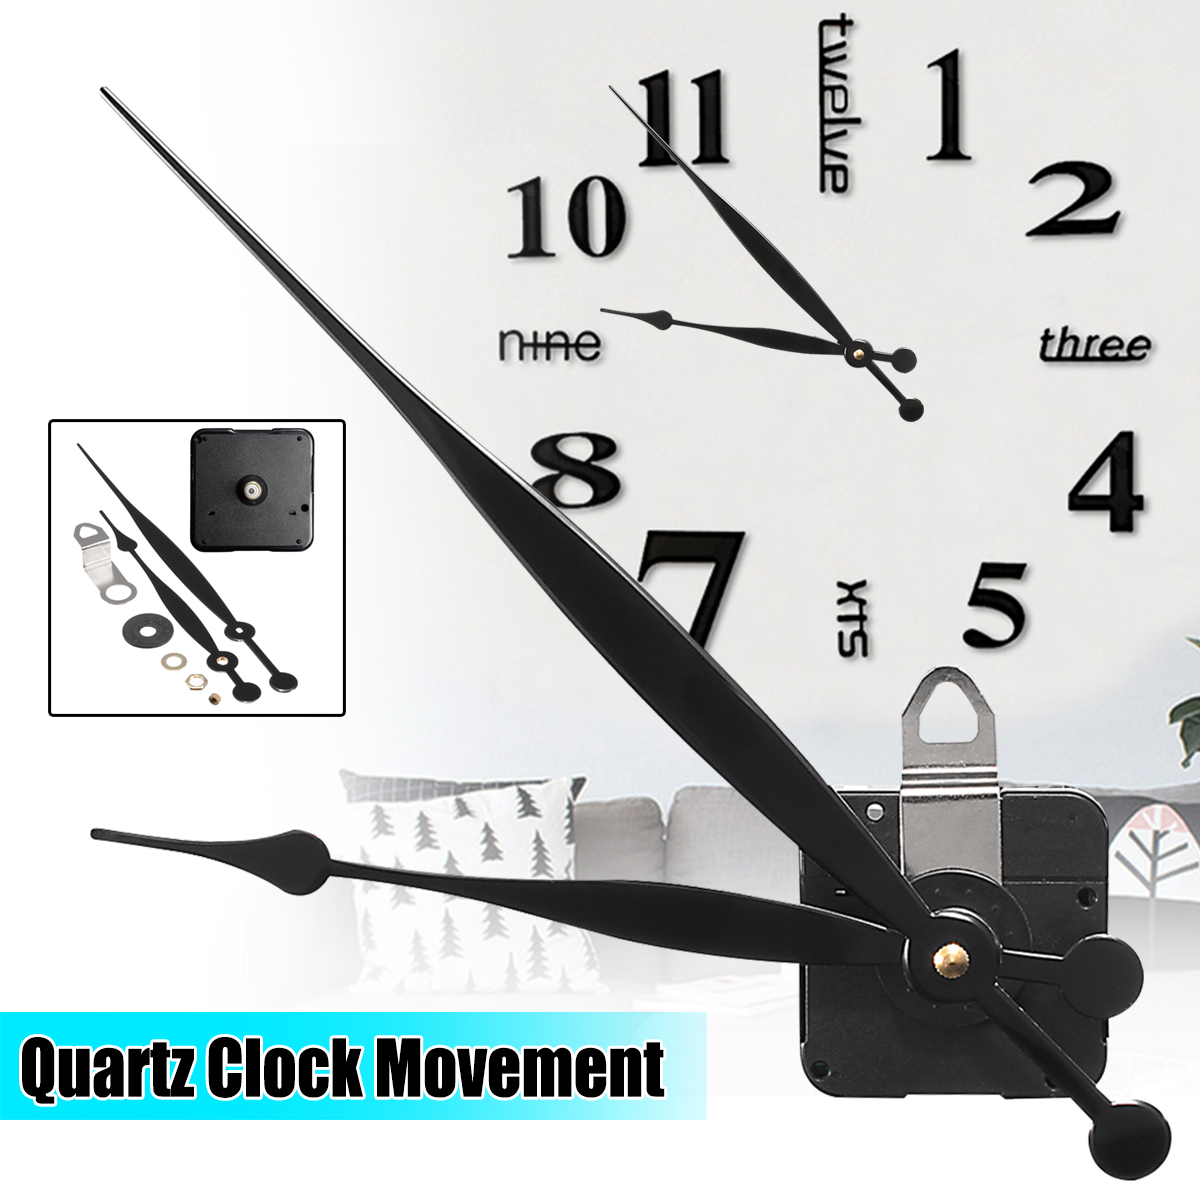 Long-Hand-Quartz-Clock-Movement-Mechanism-Motor-High-Torque-Hour-Minute-Hands-DIY-Module-Kit-1333713-2